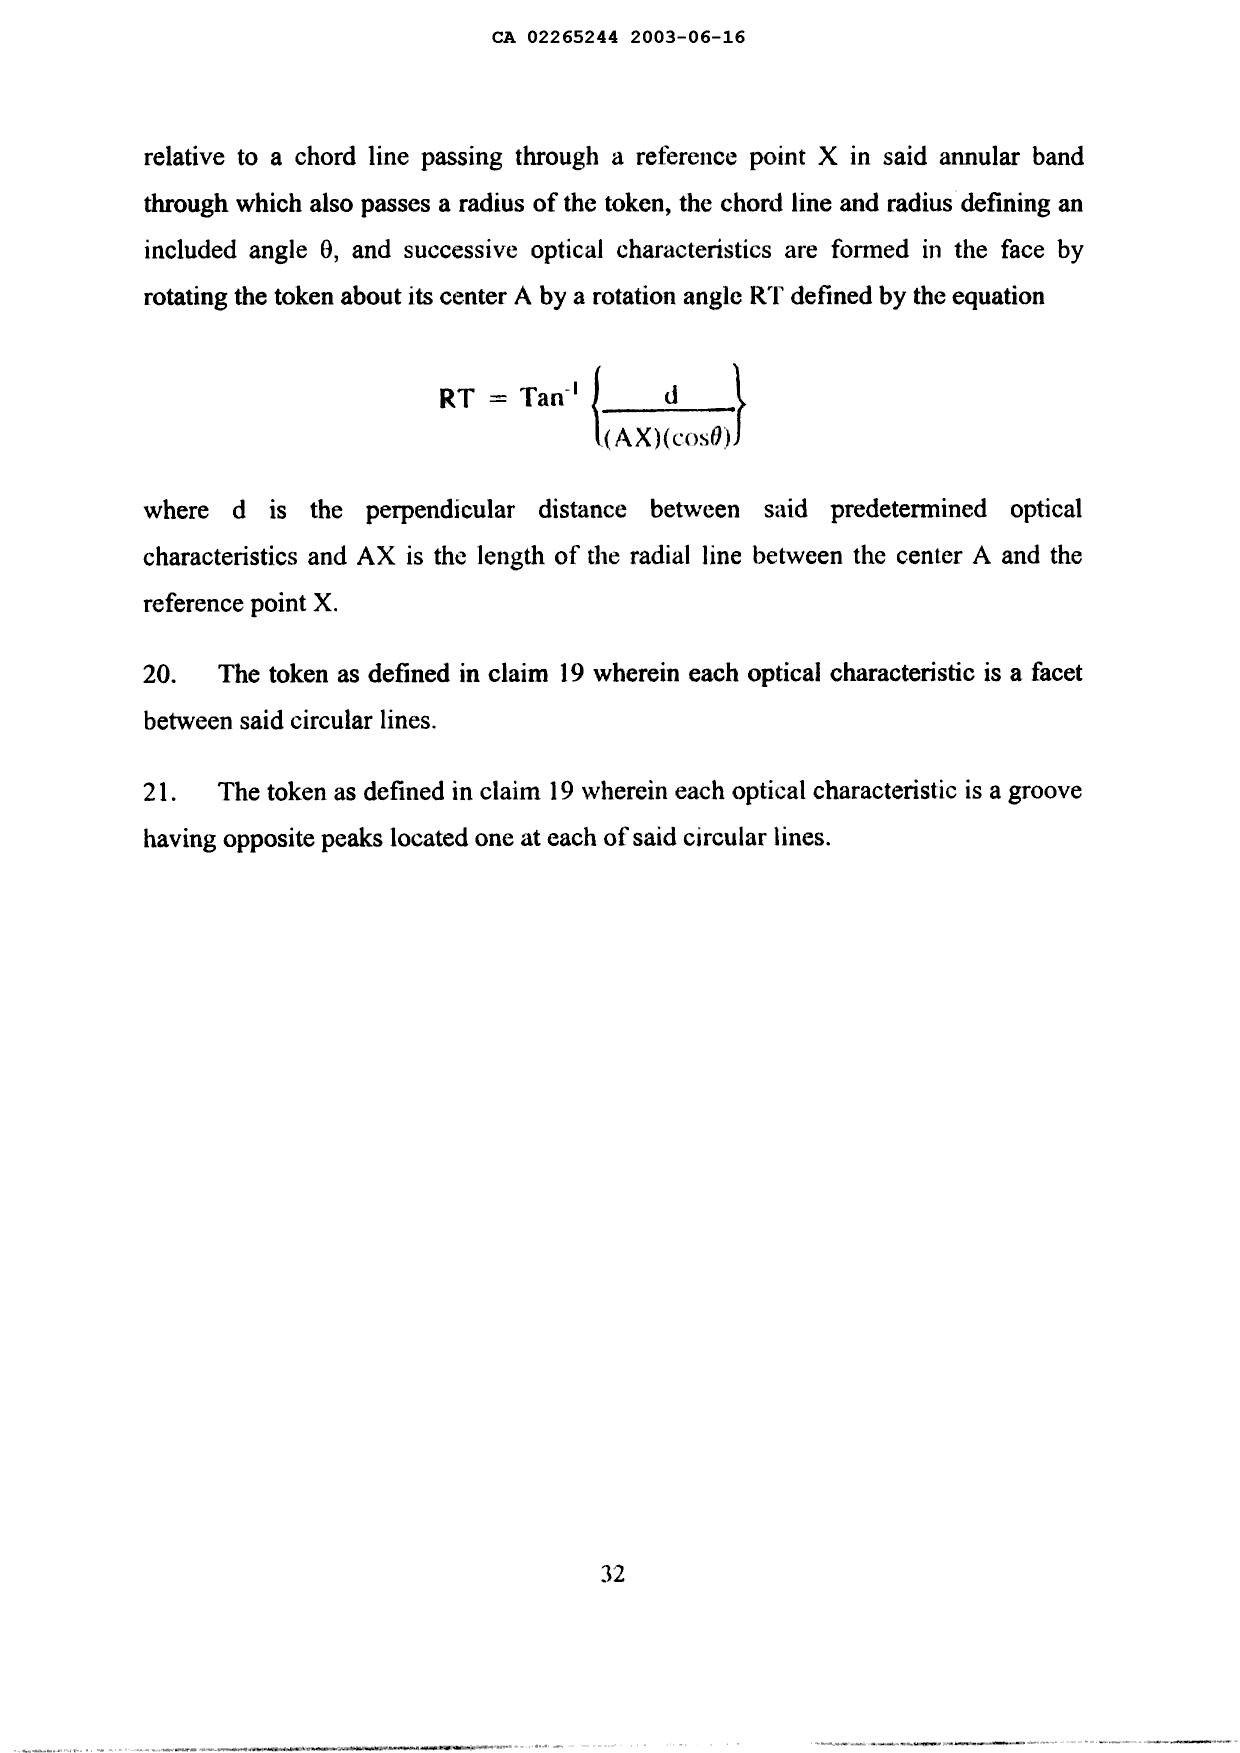 Document de brevet canadien 2265244. Poursuite-Amendment 20021216. Image 43 de 43